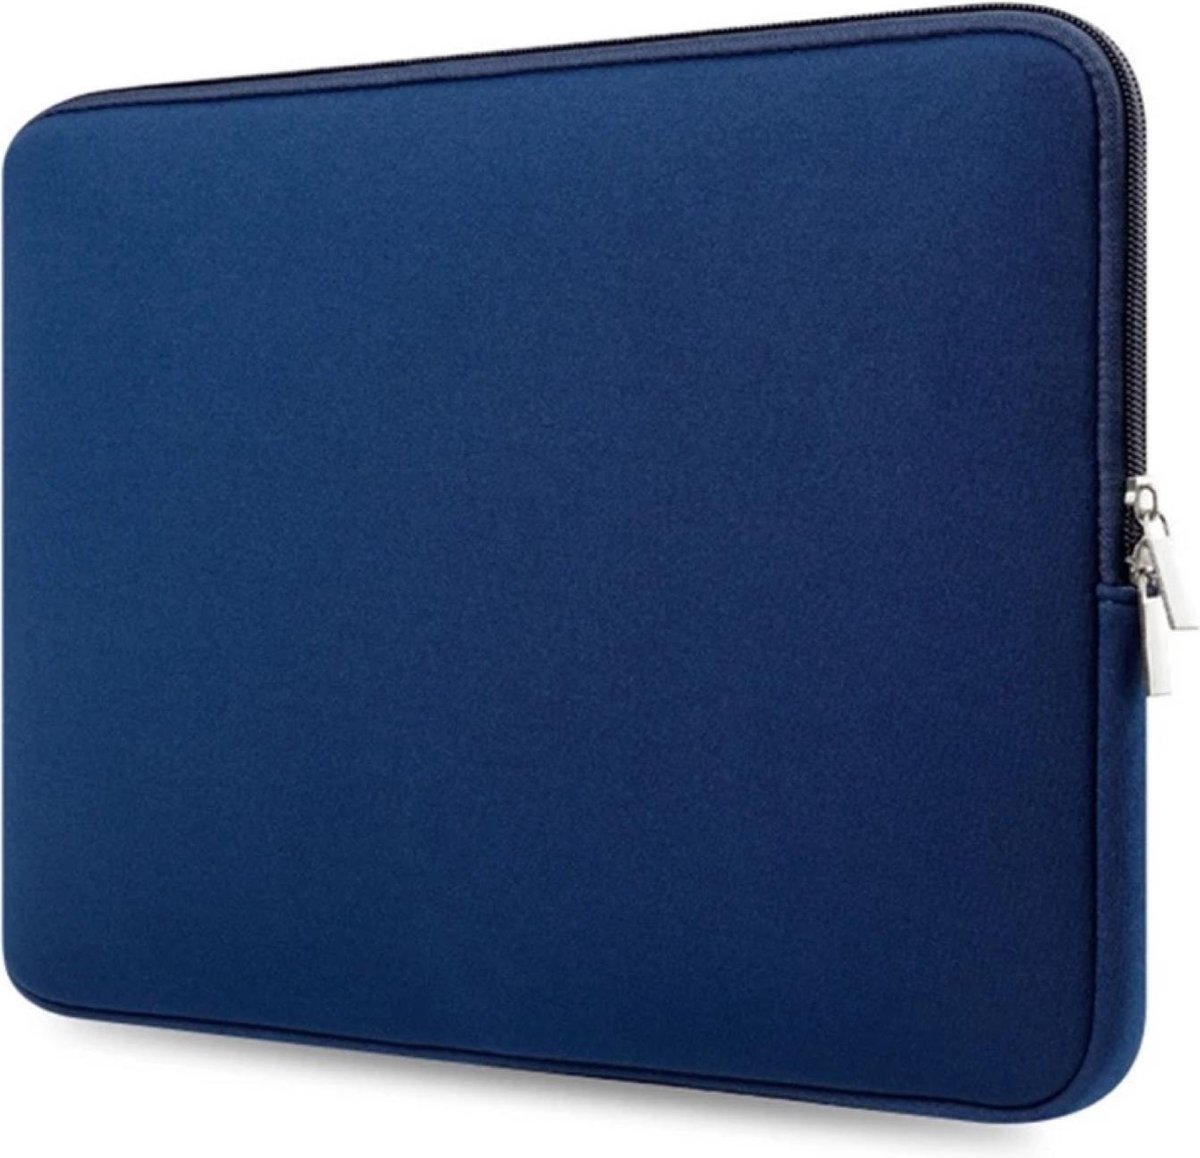 Laptopcase – sleeve – spatwaterdicht – 14,6 inch – laptoptas – donker blauw - Soft Touch